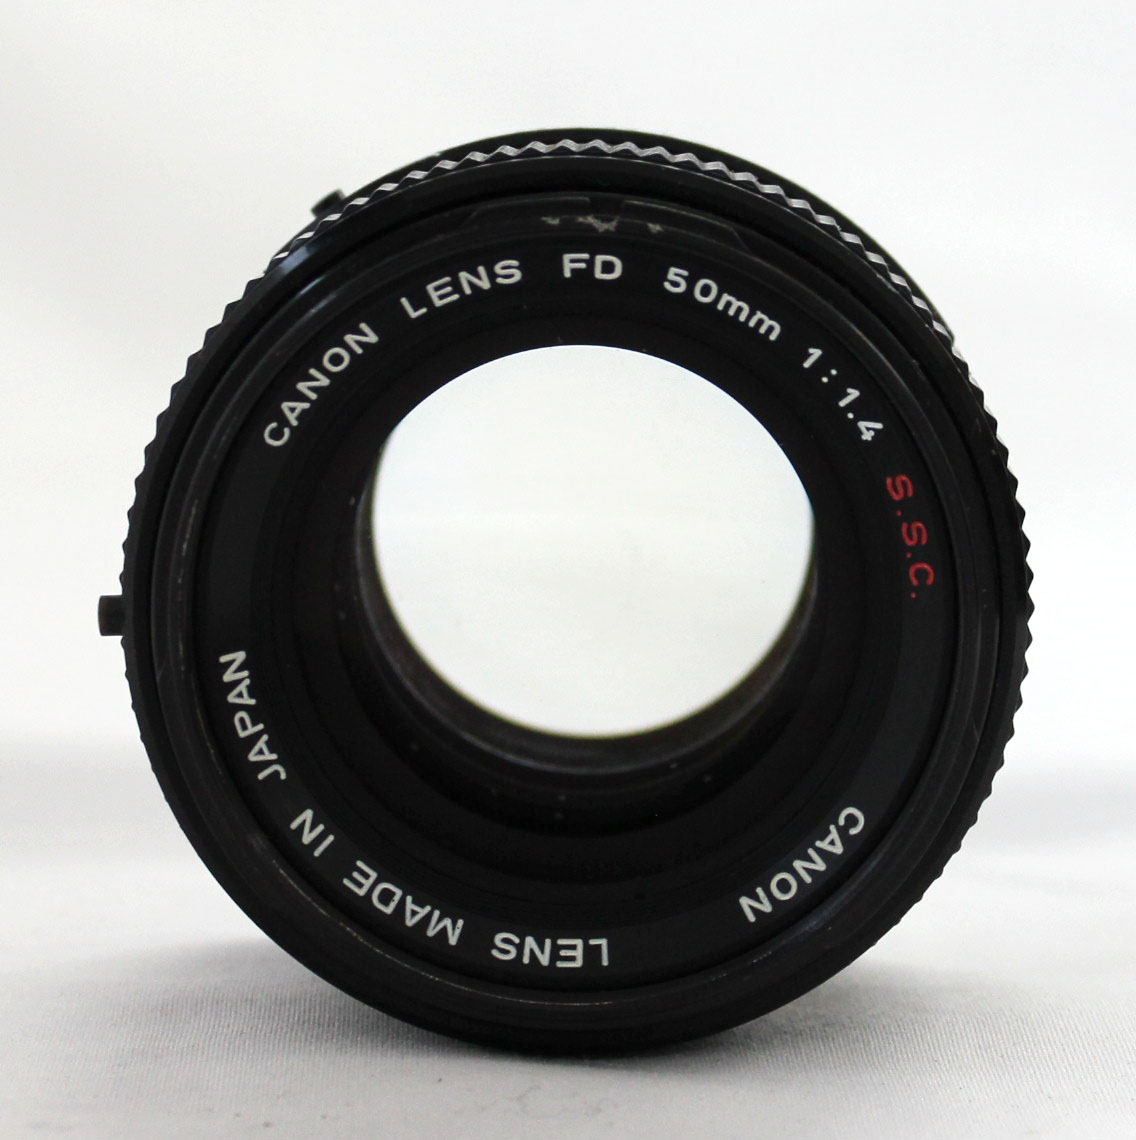 Canon AE-1 35mm SLR Camera with FD 50mm F/1.4 S.S.C. Lens from Japan Photo 16